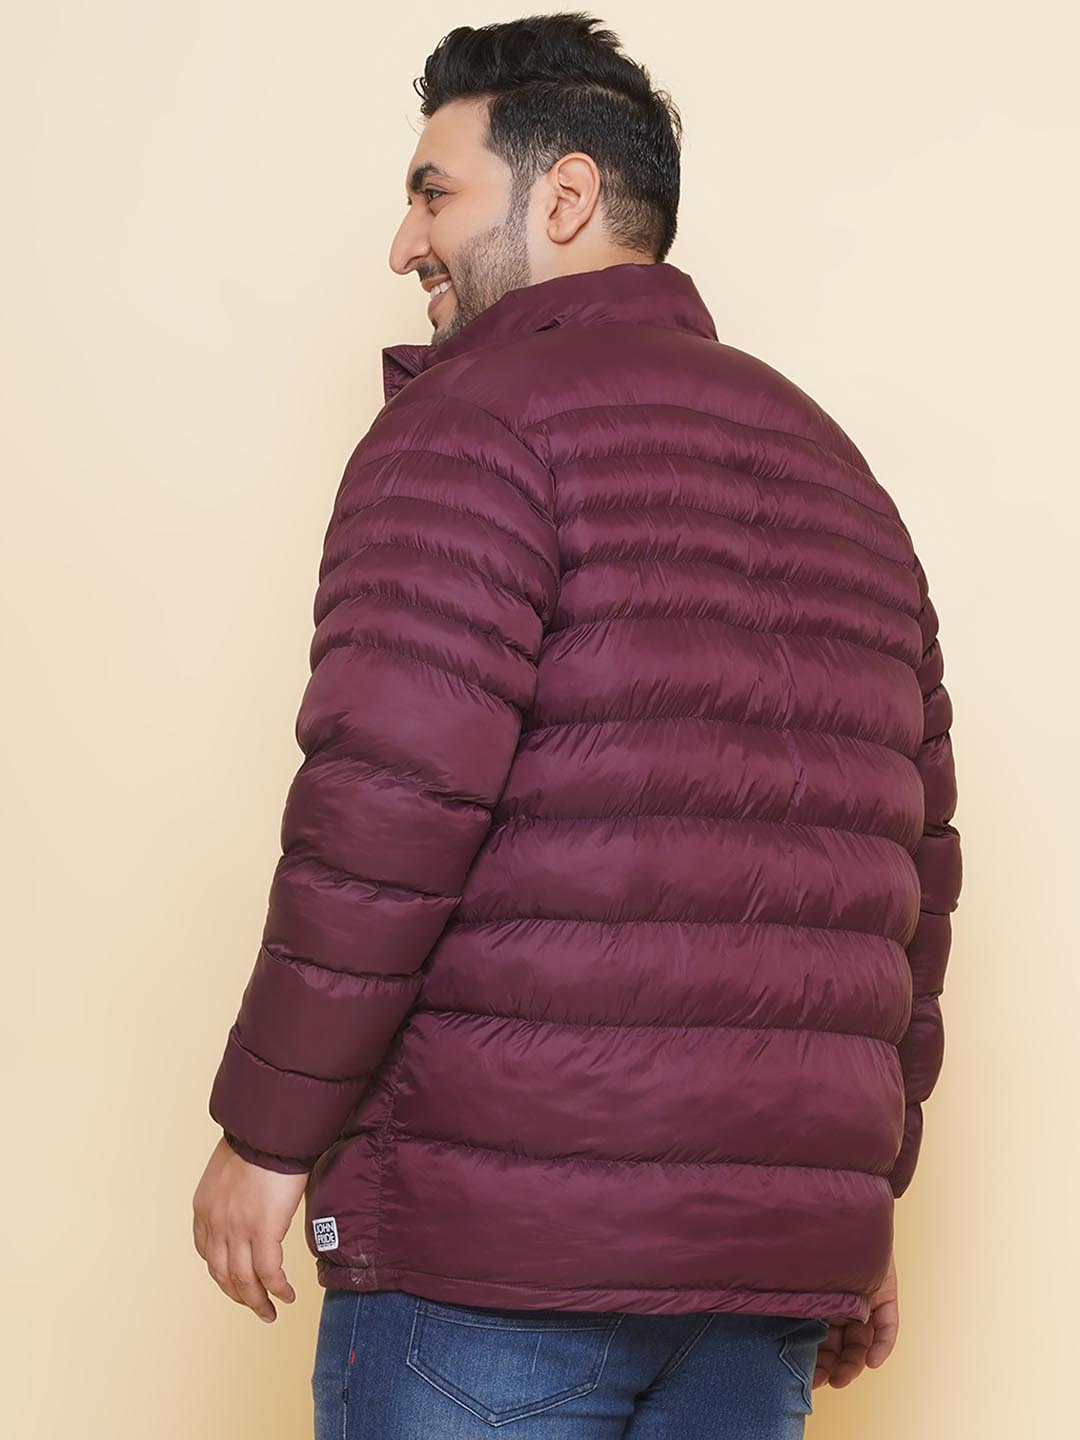 winterwear/jackets/JPJKT73083A/jpjkt73083a-5.jpg